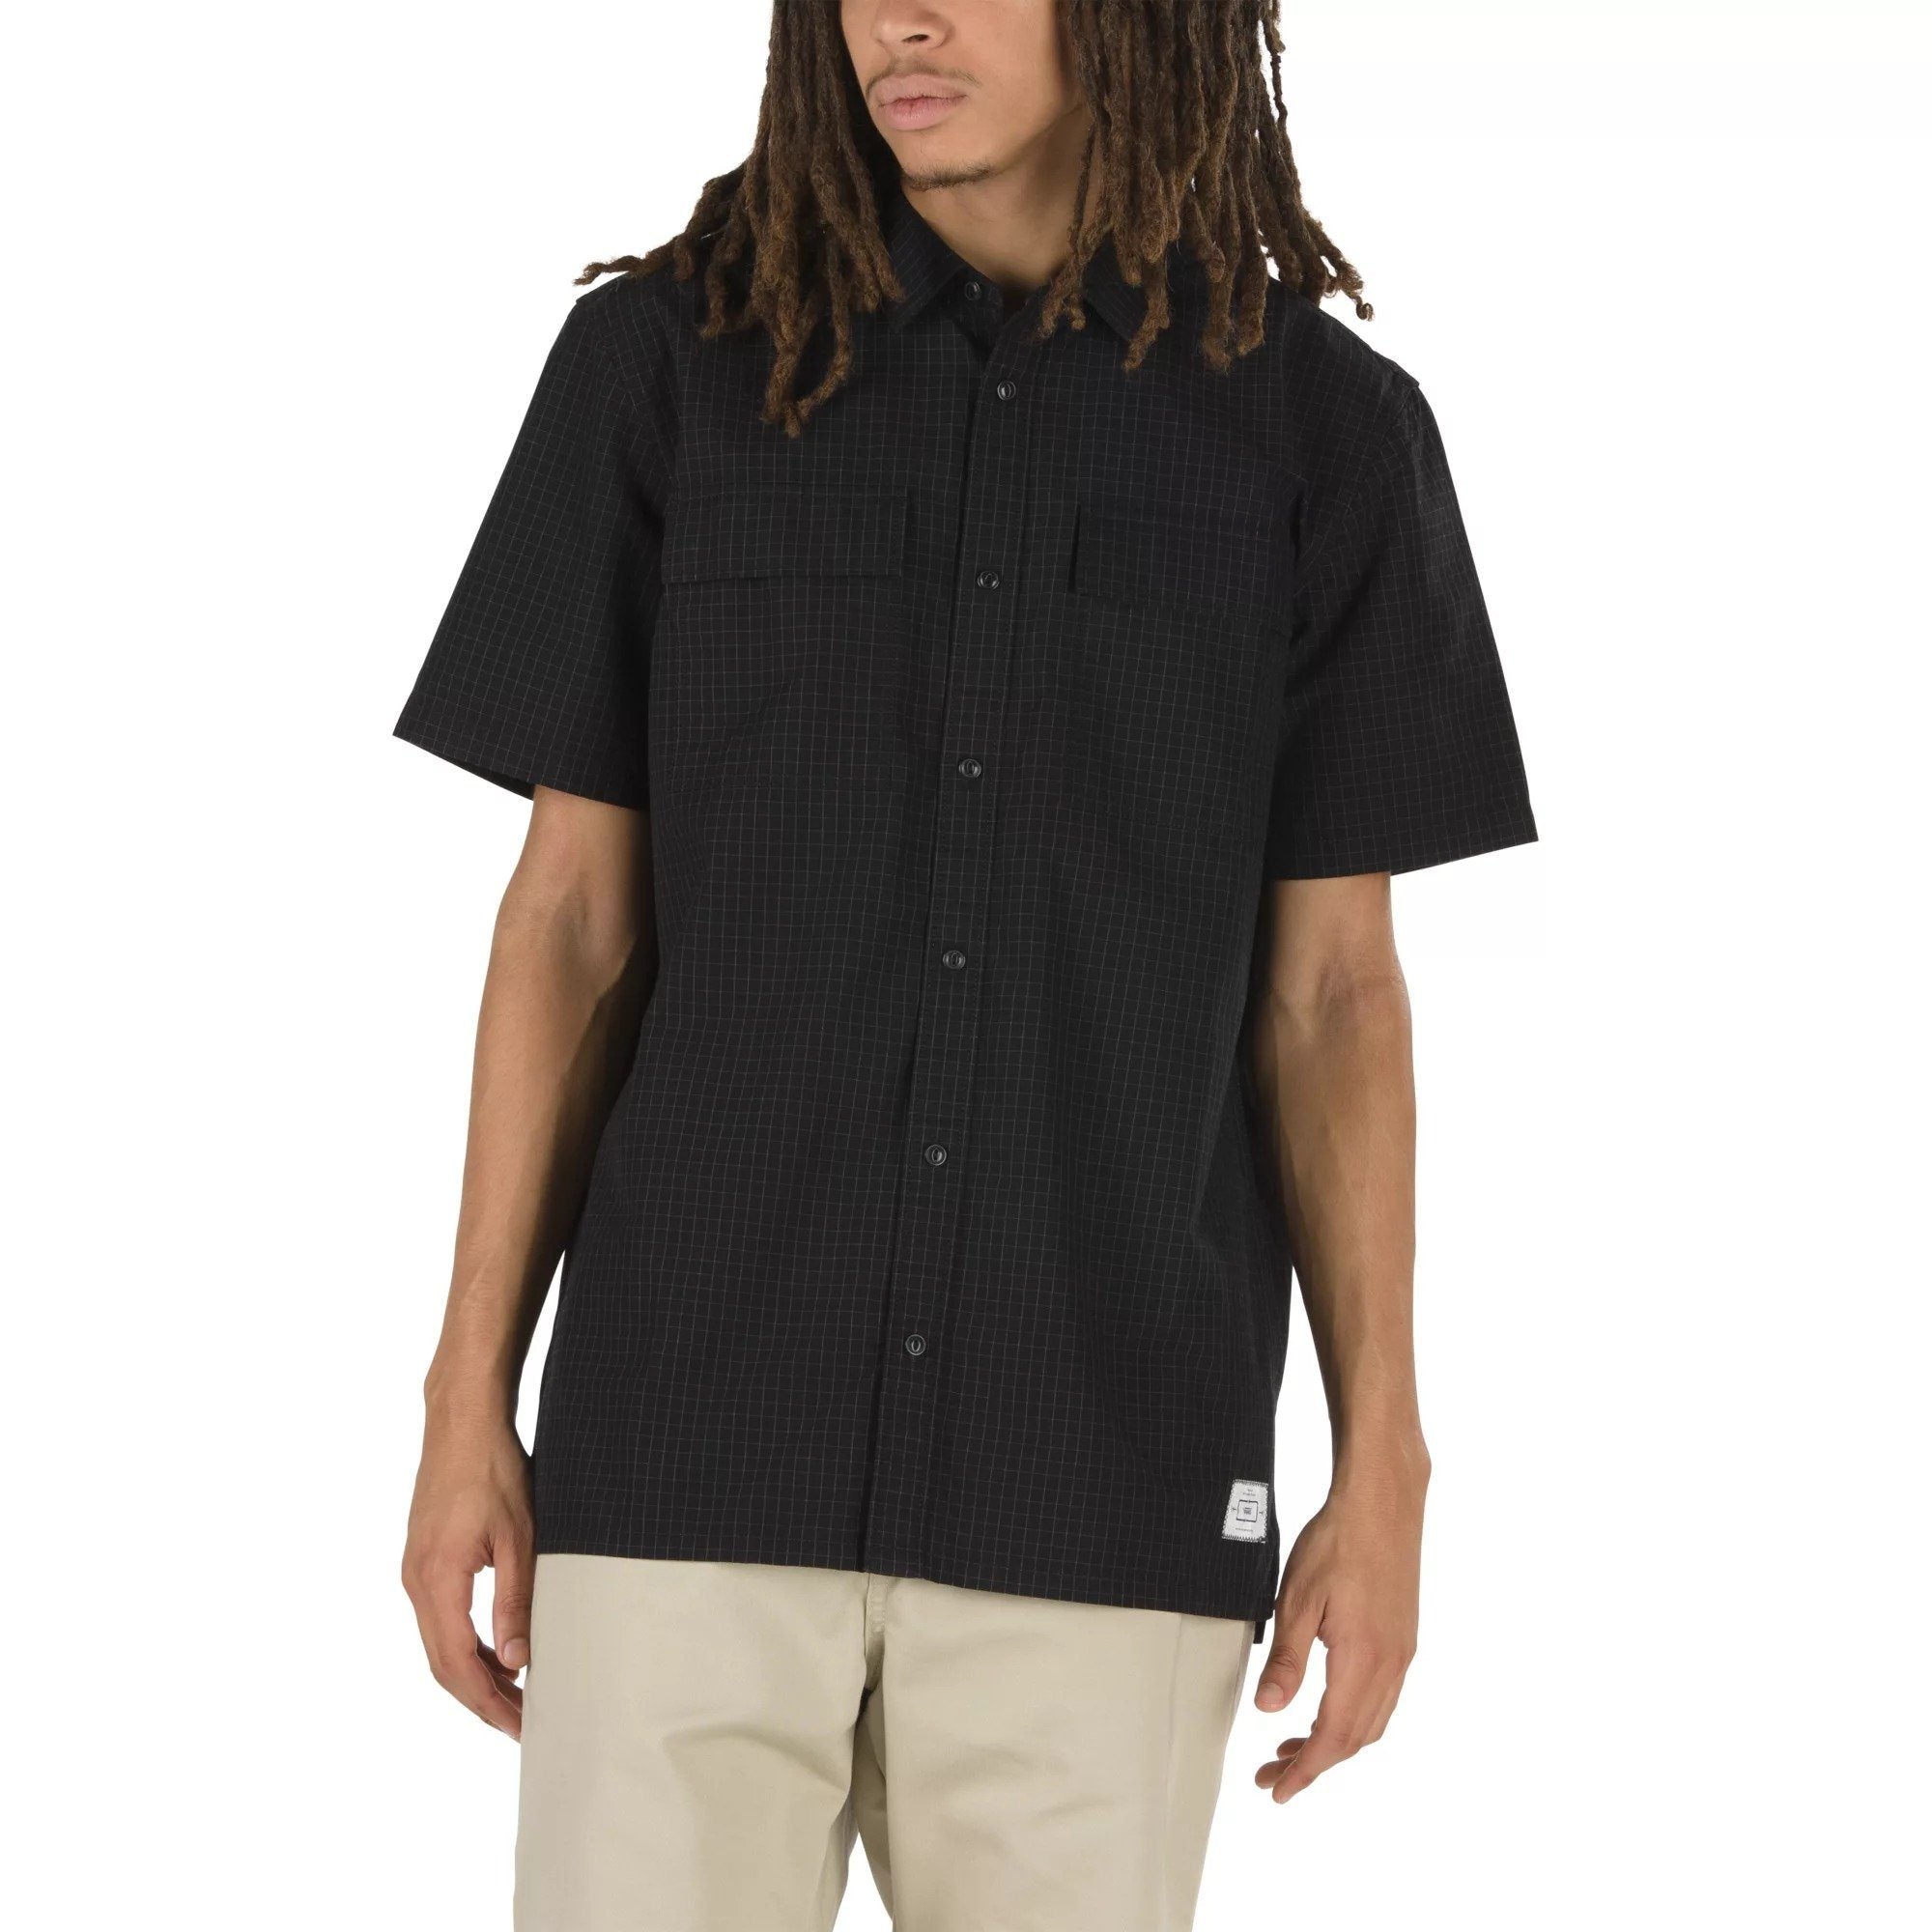 T-SHIRTS - Vans Devon SS T-Shirt Black Men VN0A49RDBLK